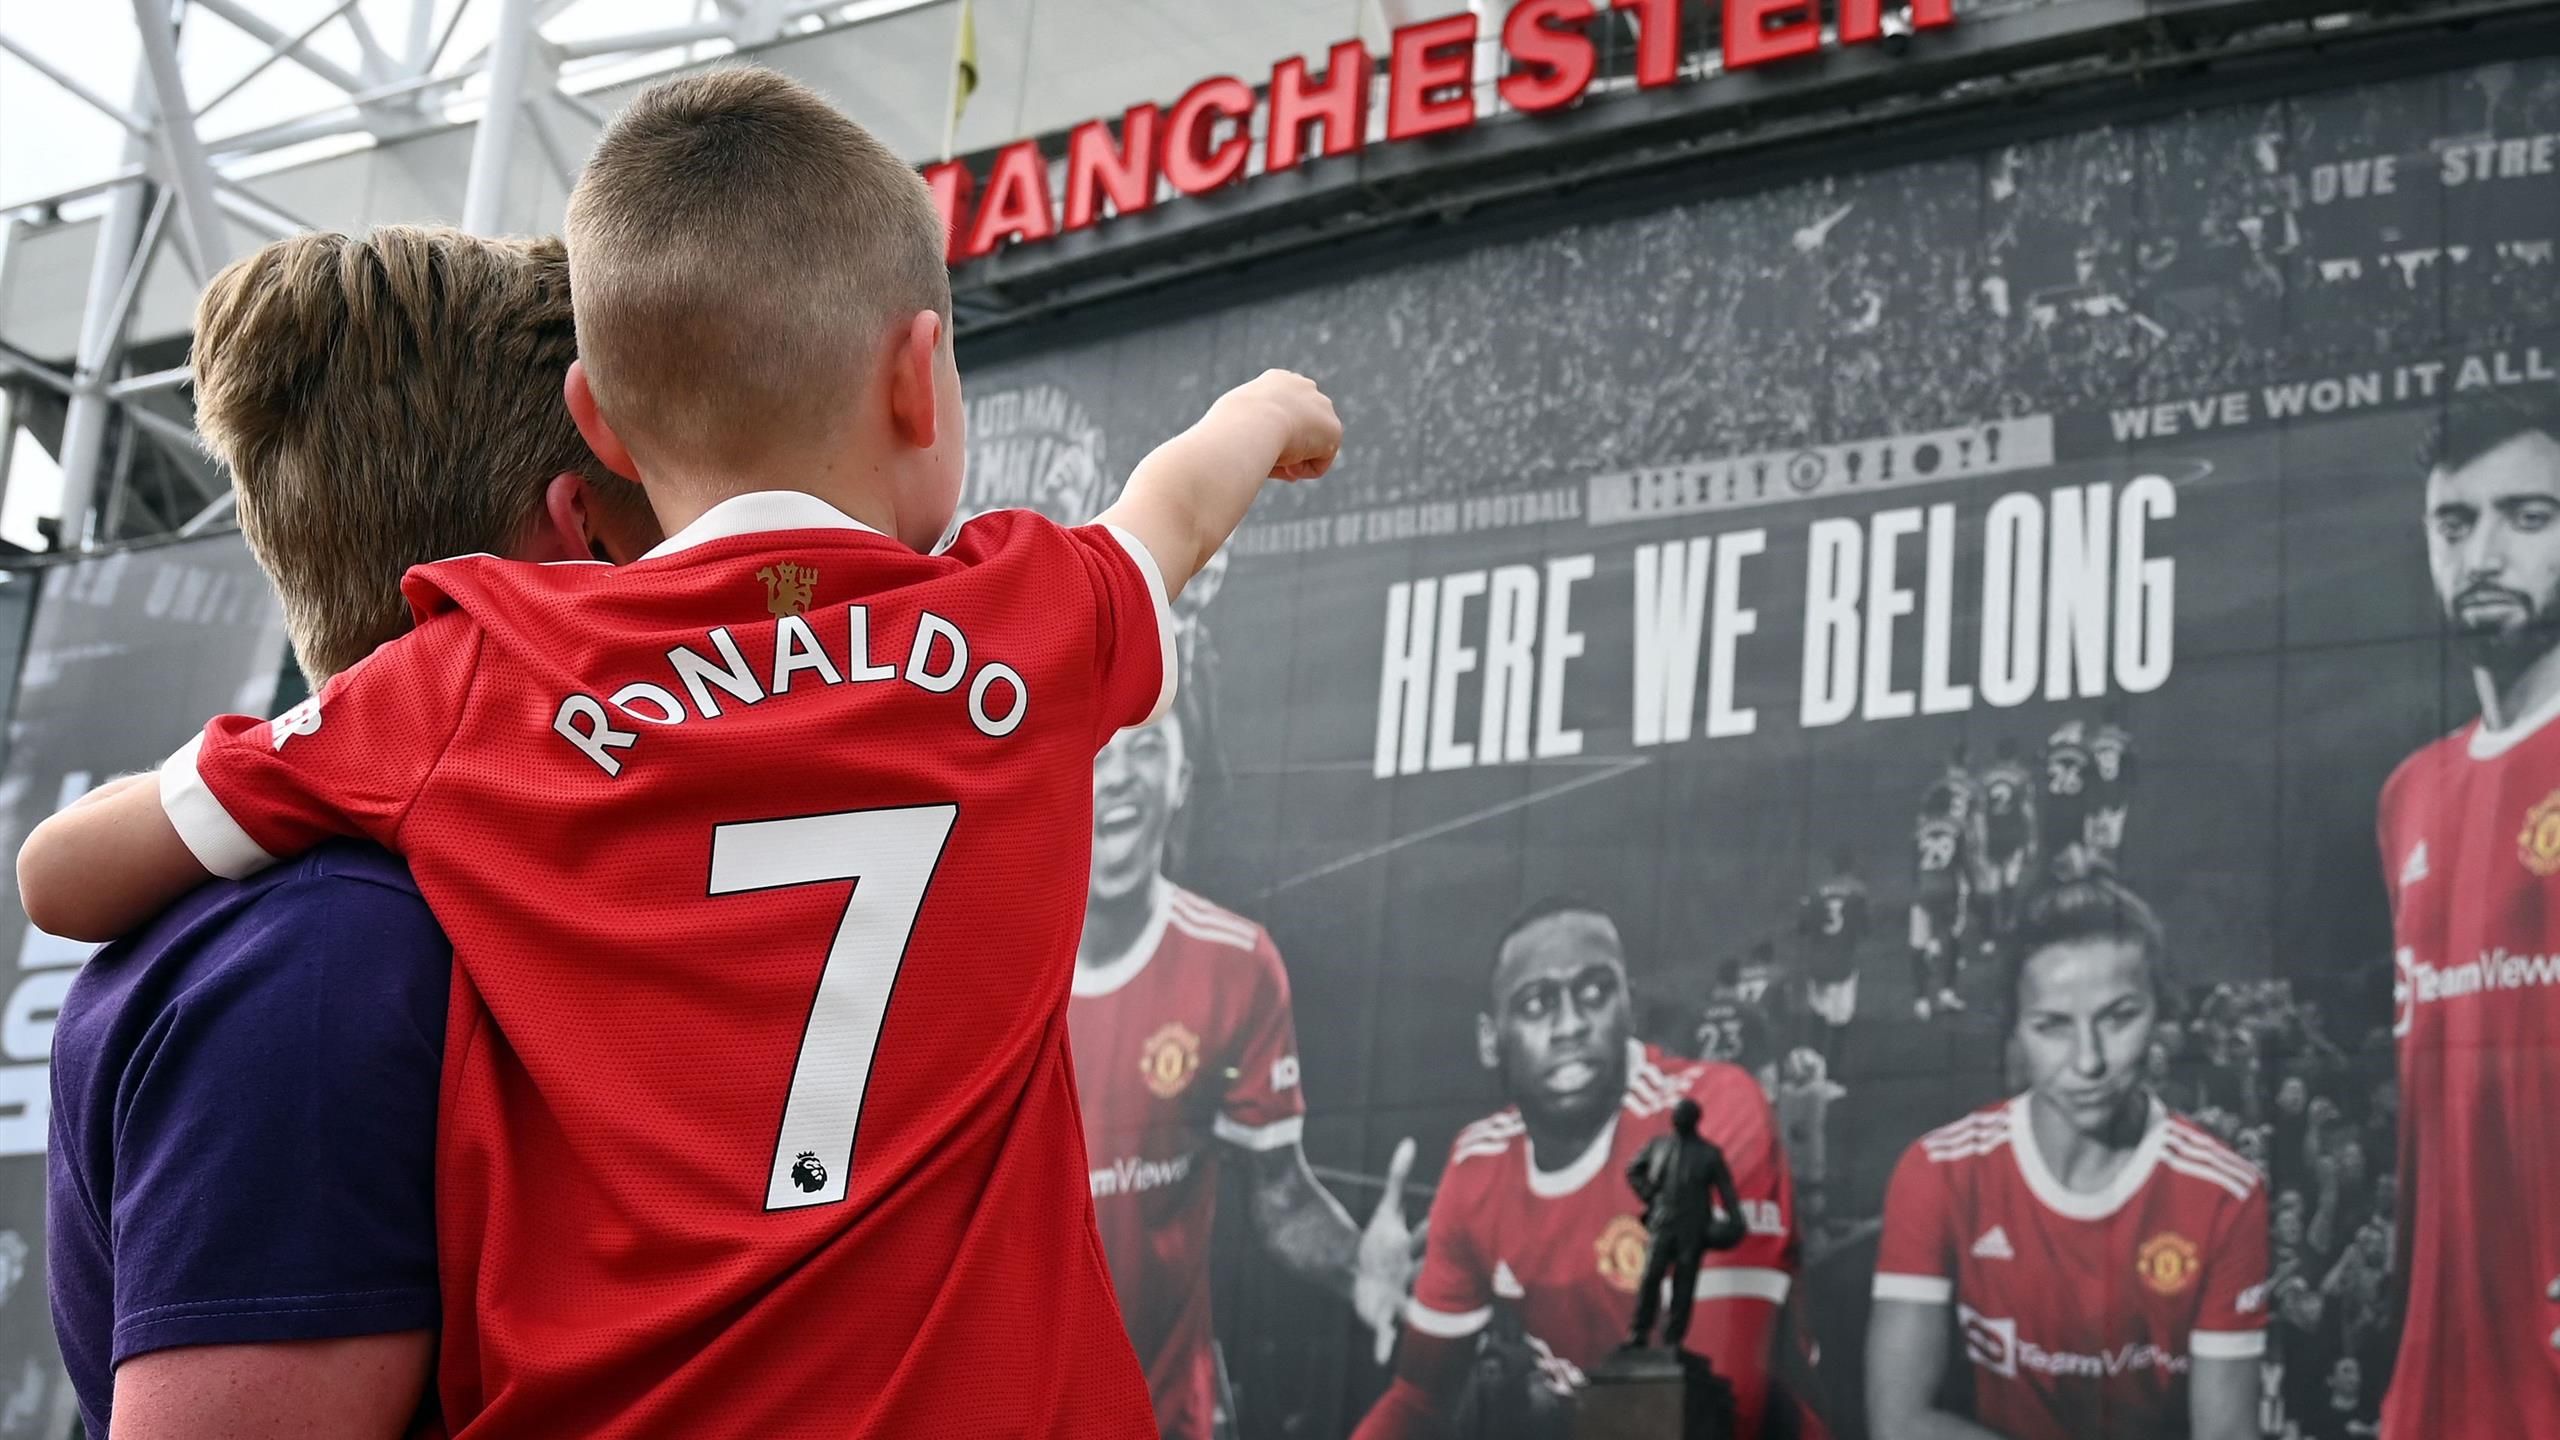 Une première depuis le clash, le vibrant hommage des fans de United à CR7 à Old Trafford